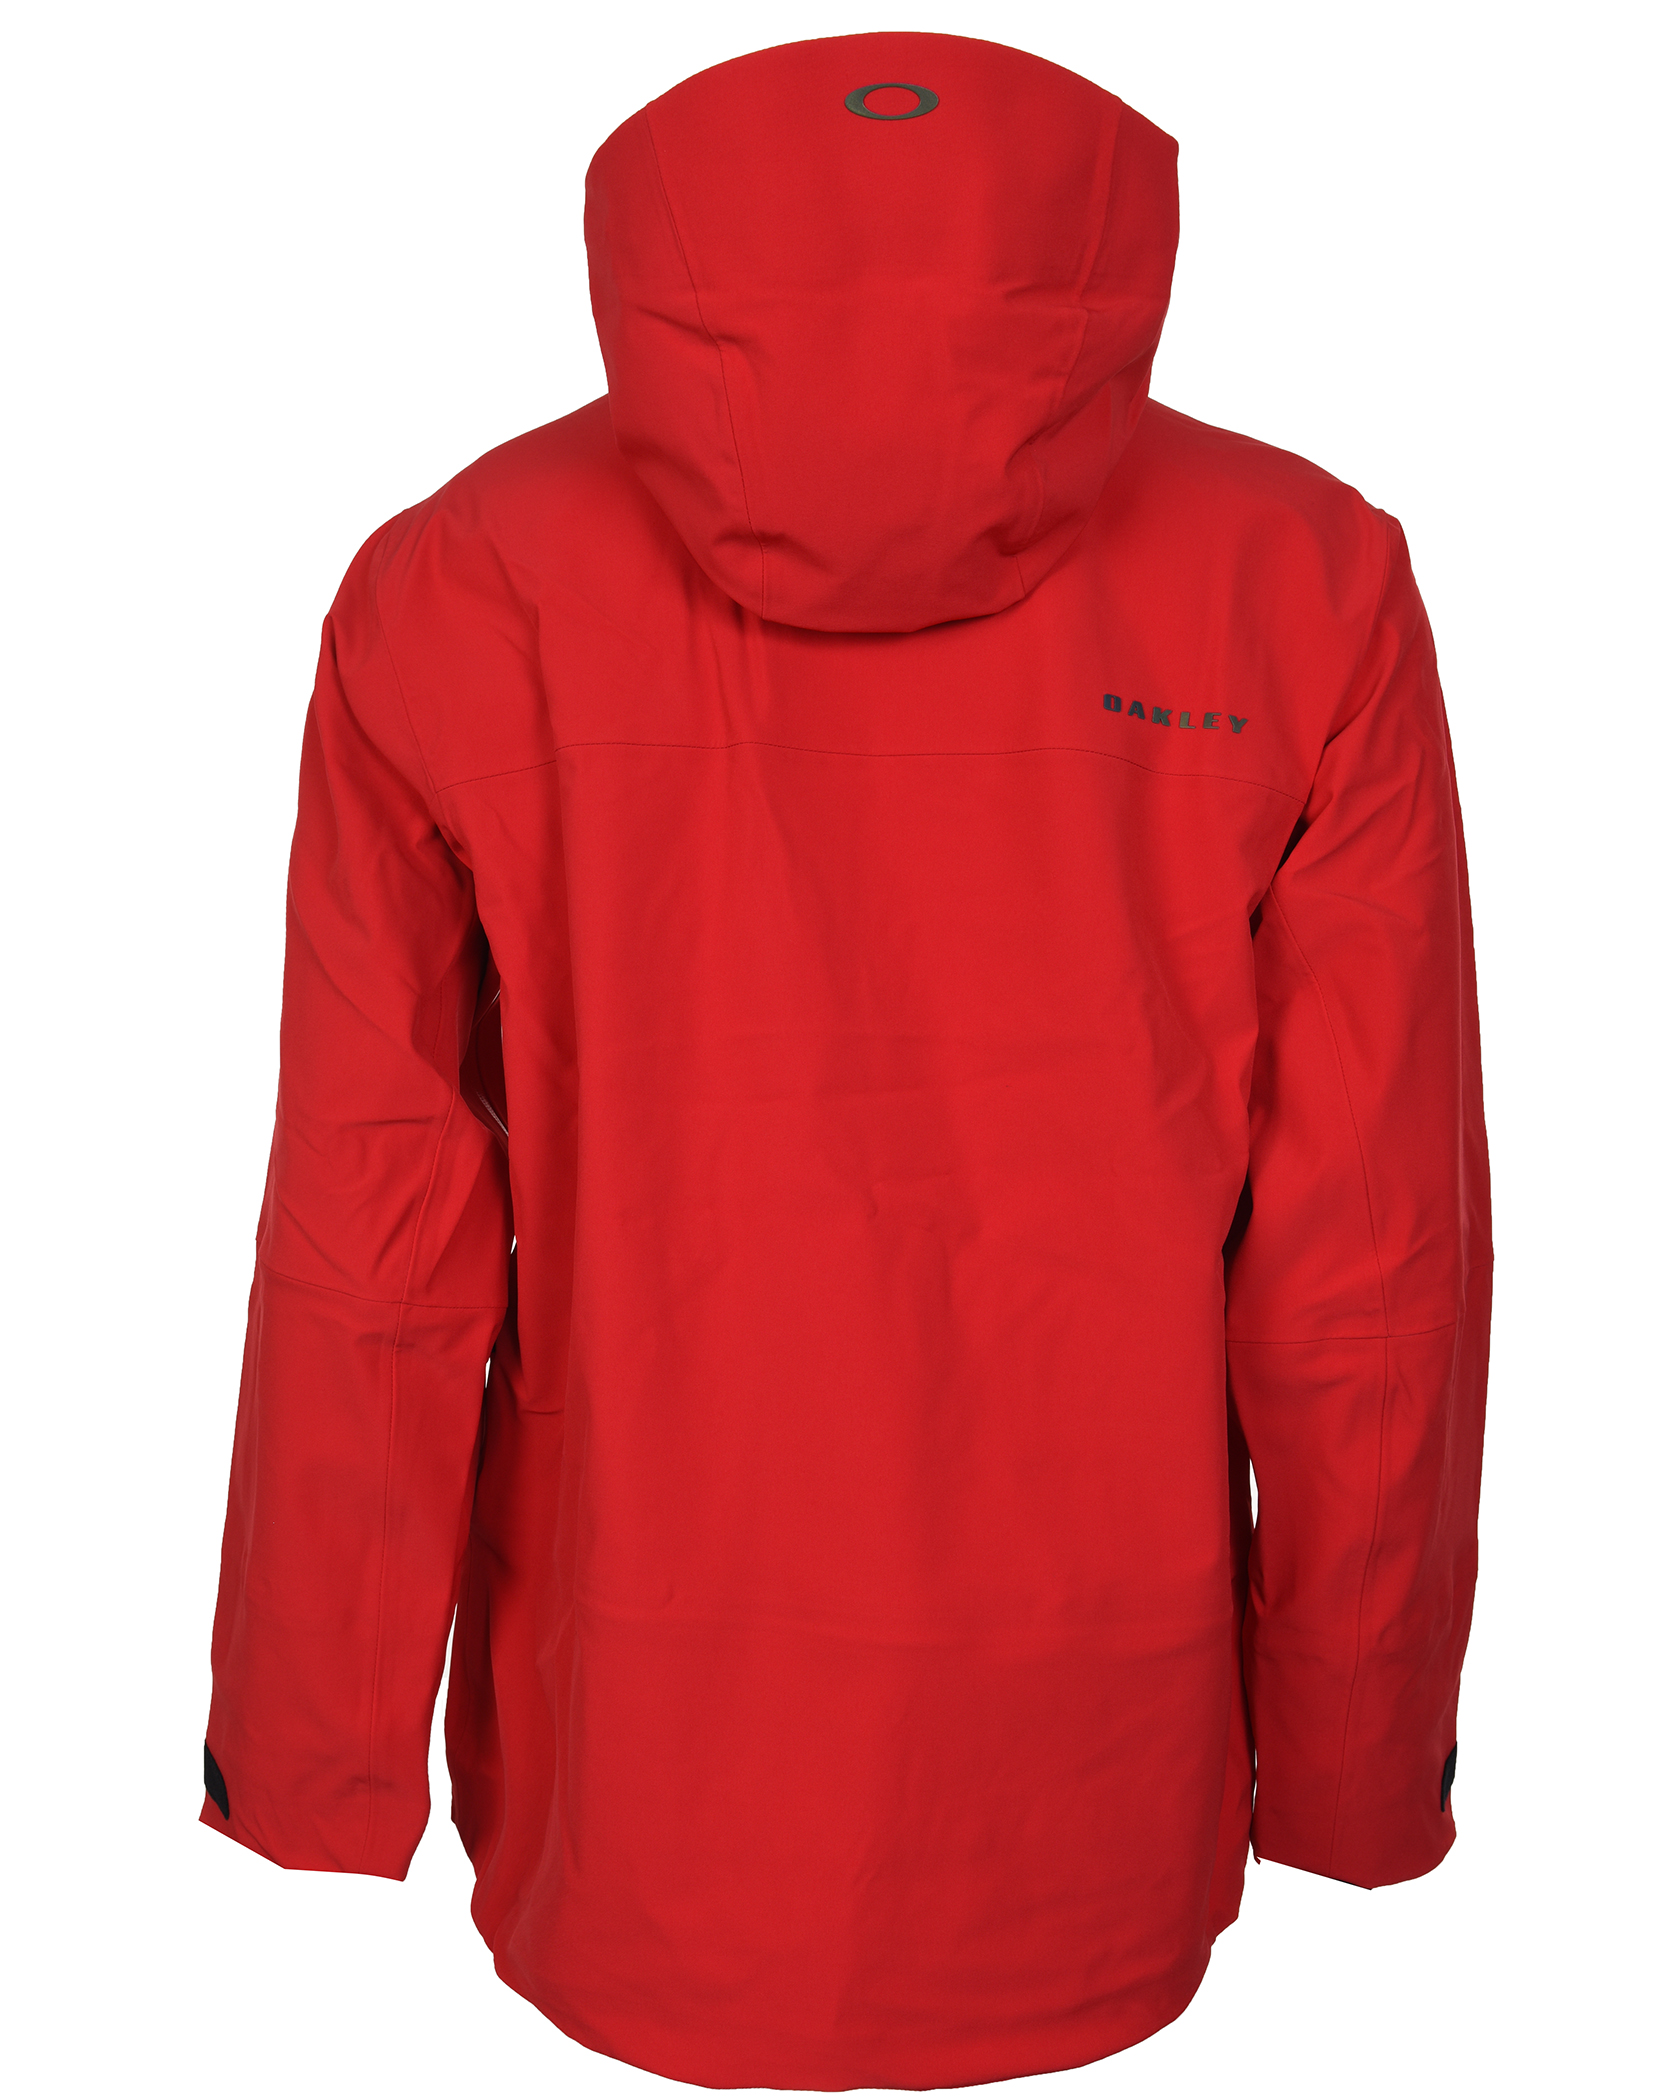 red oakley jacket